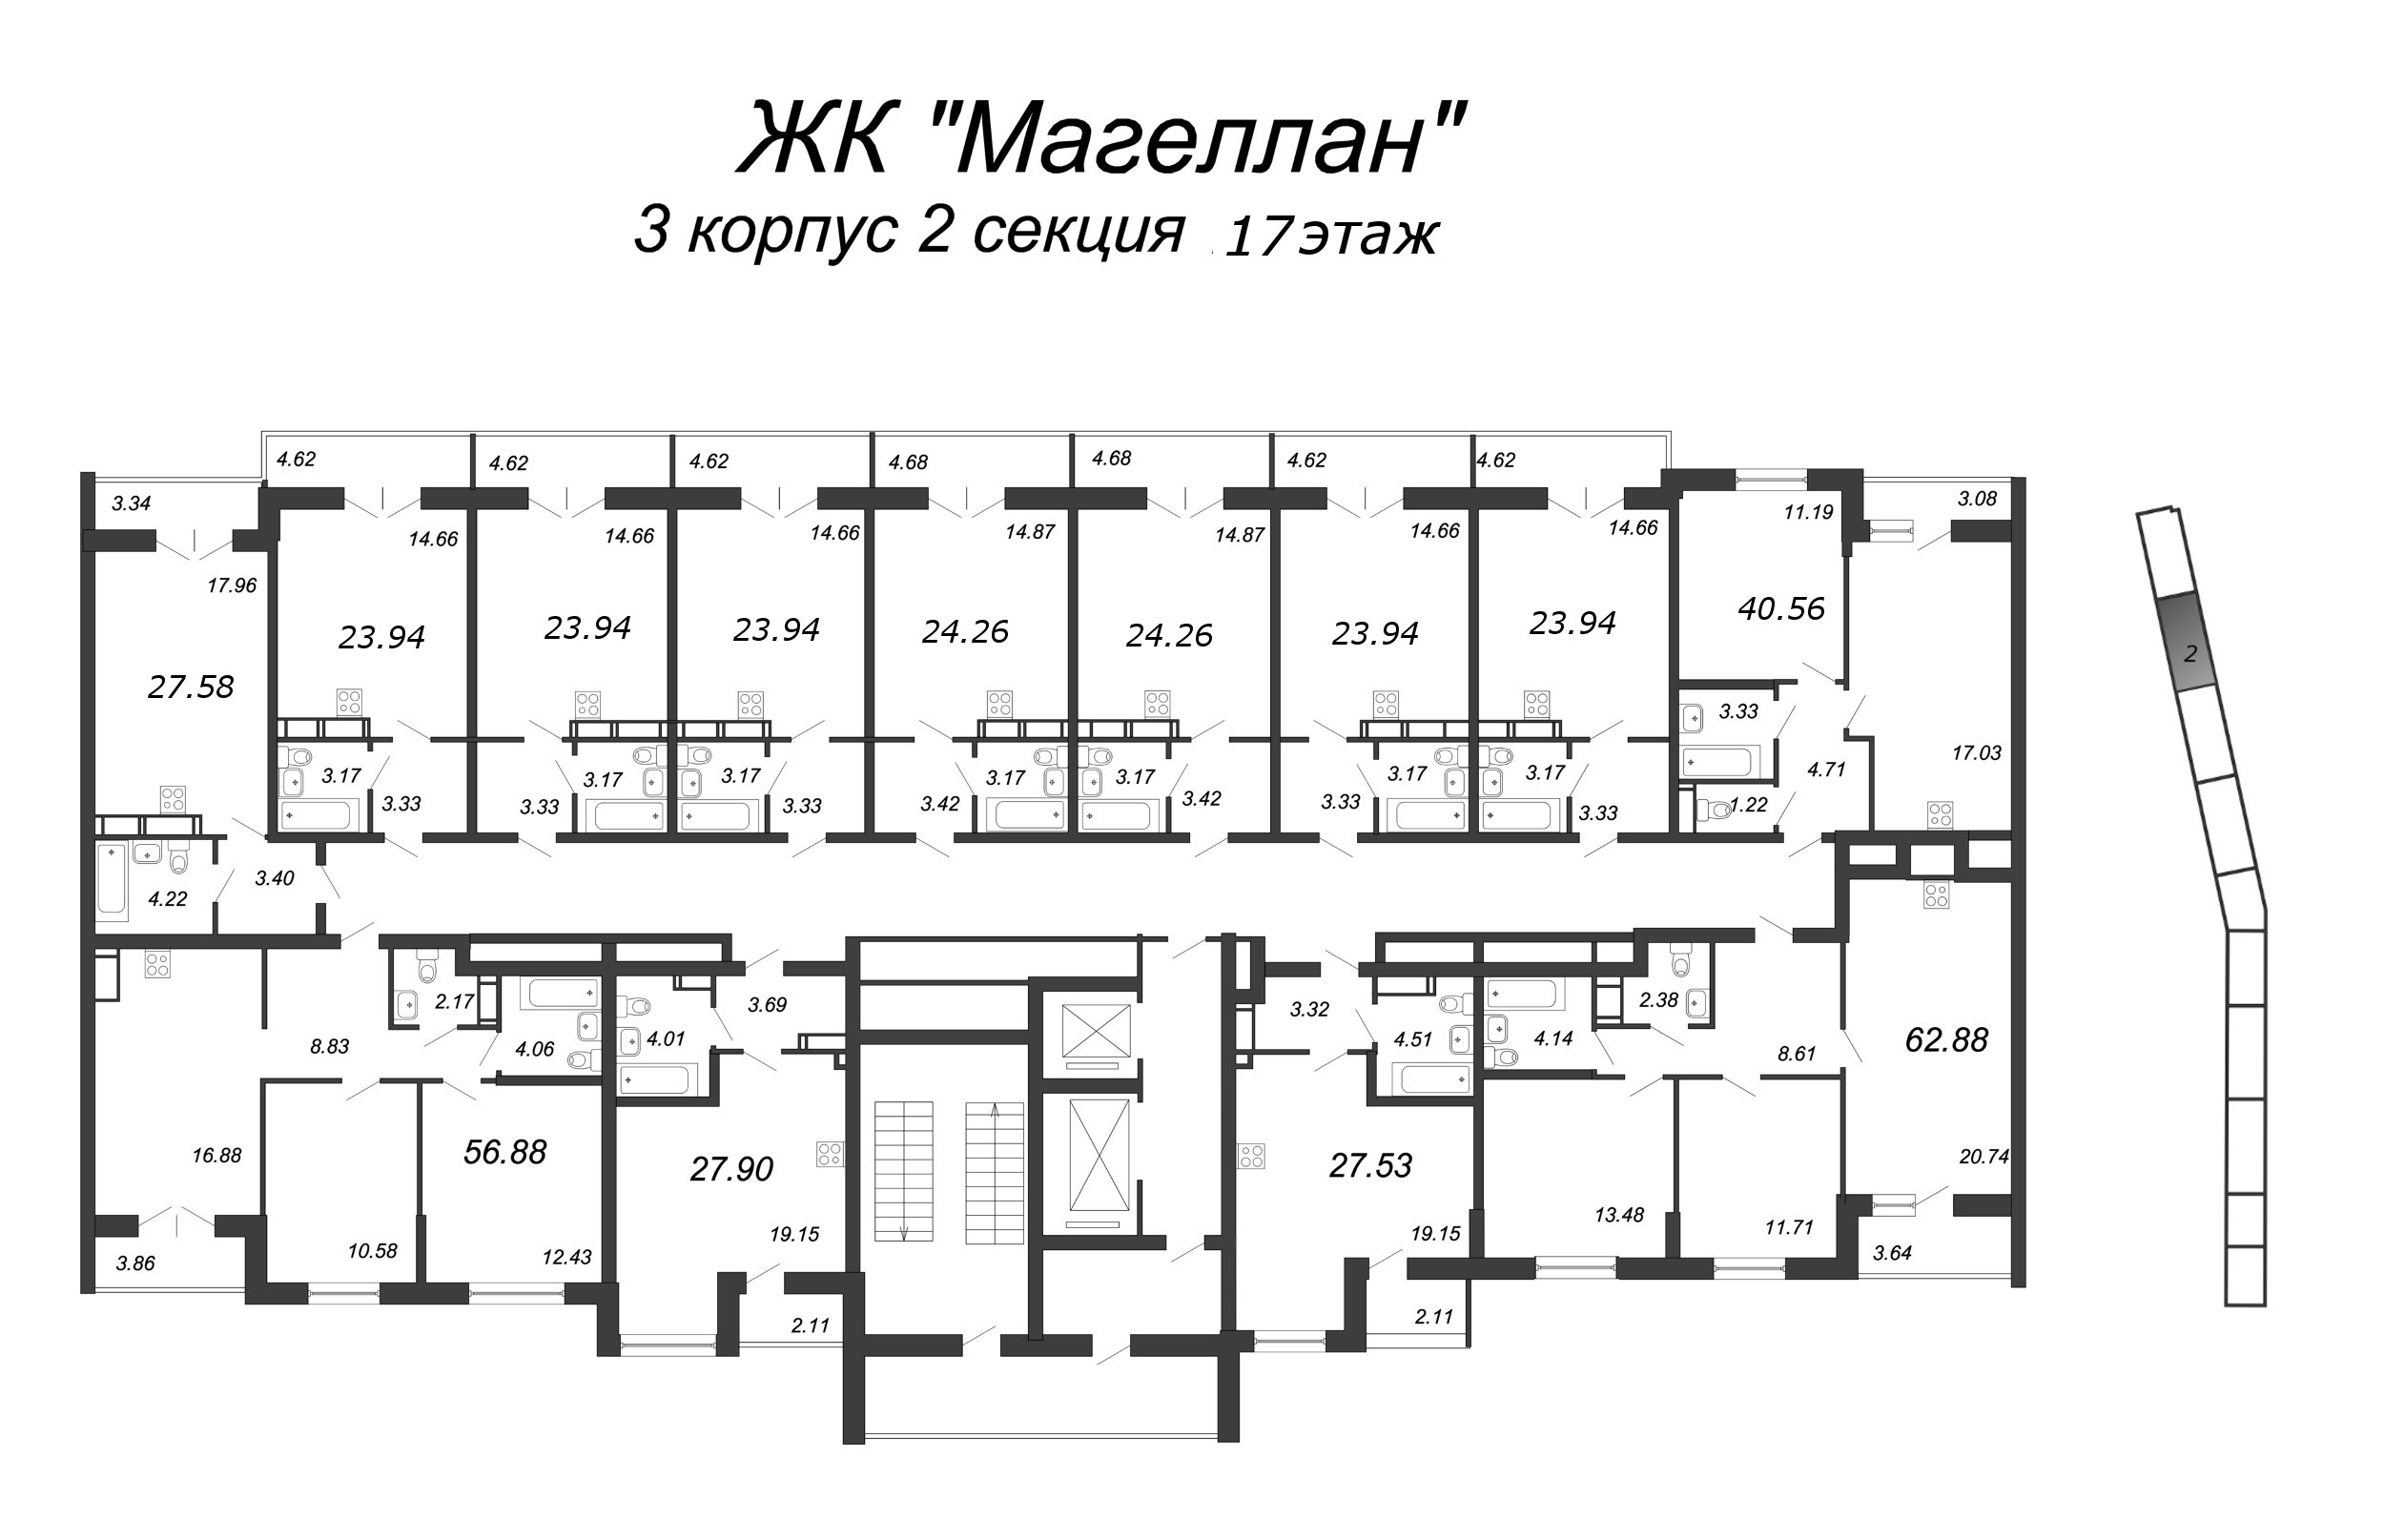 3-комнатная (Евро) квартира, 63.5 м² в ЖК "Магеллан" - планировка этажа